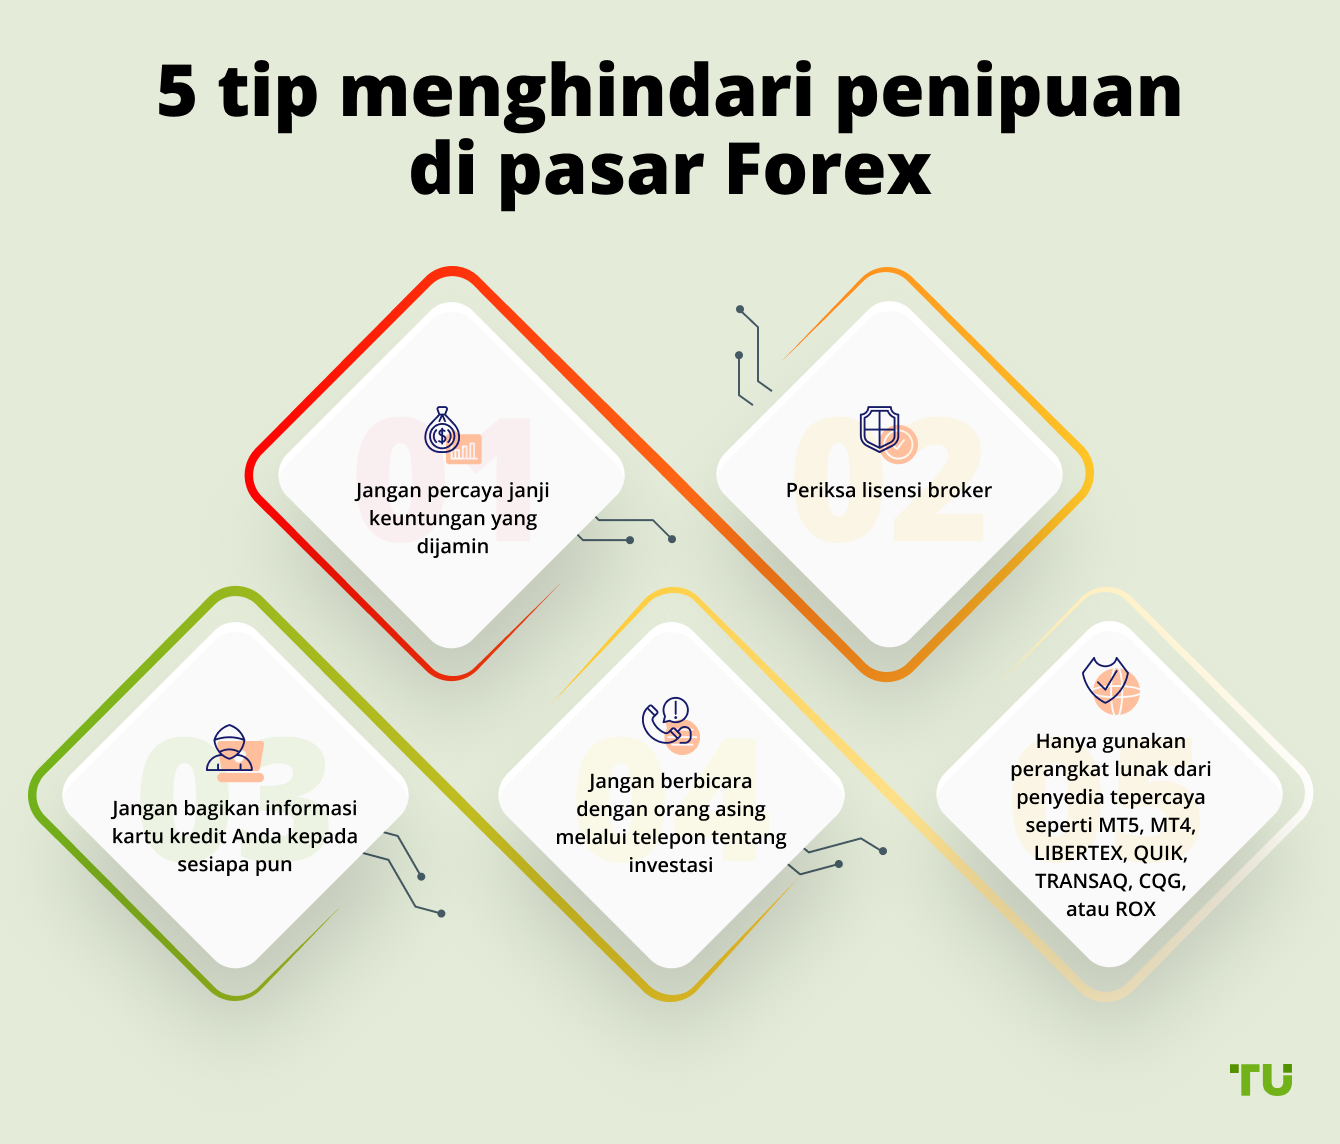 5 tip menghindari penipuan di pasar Forex